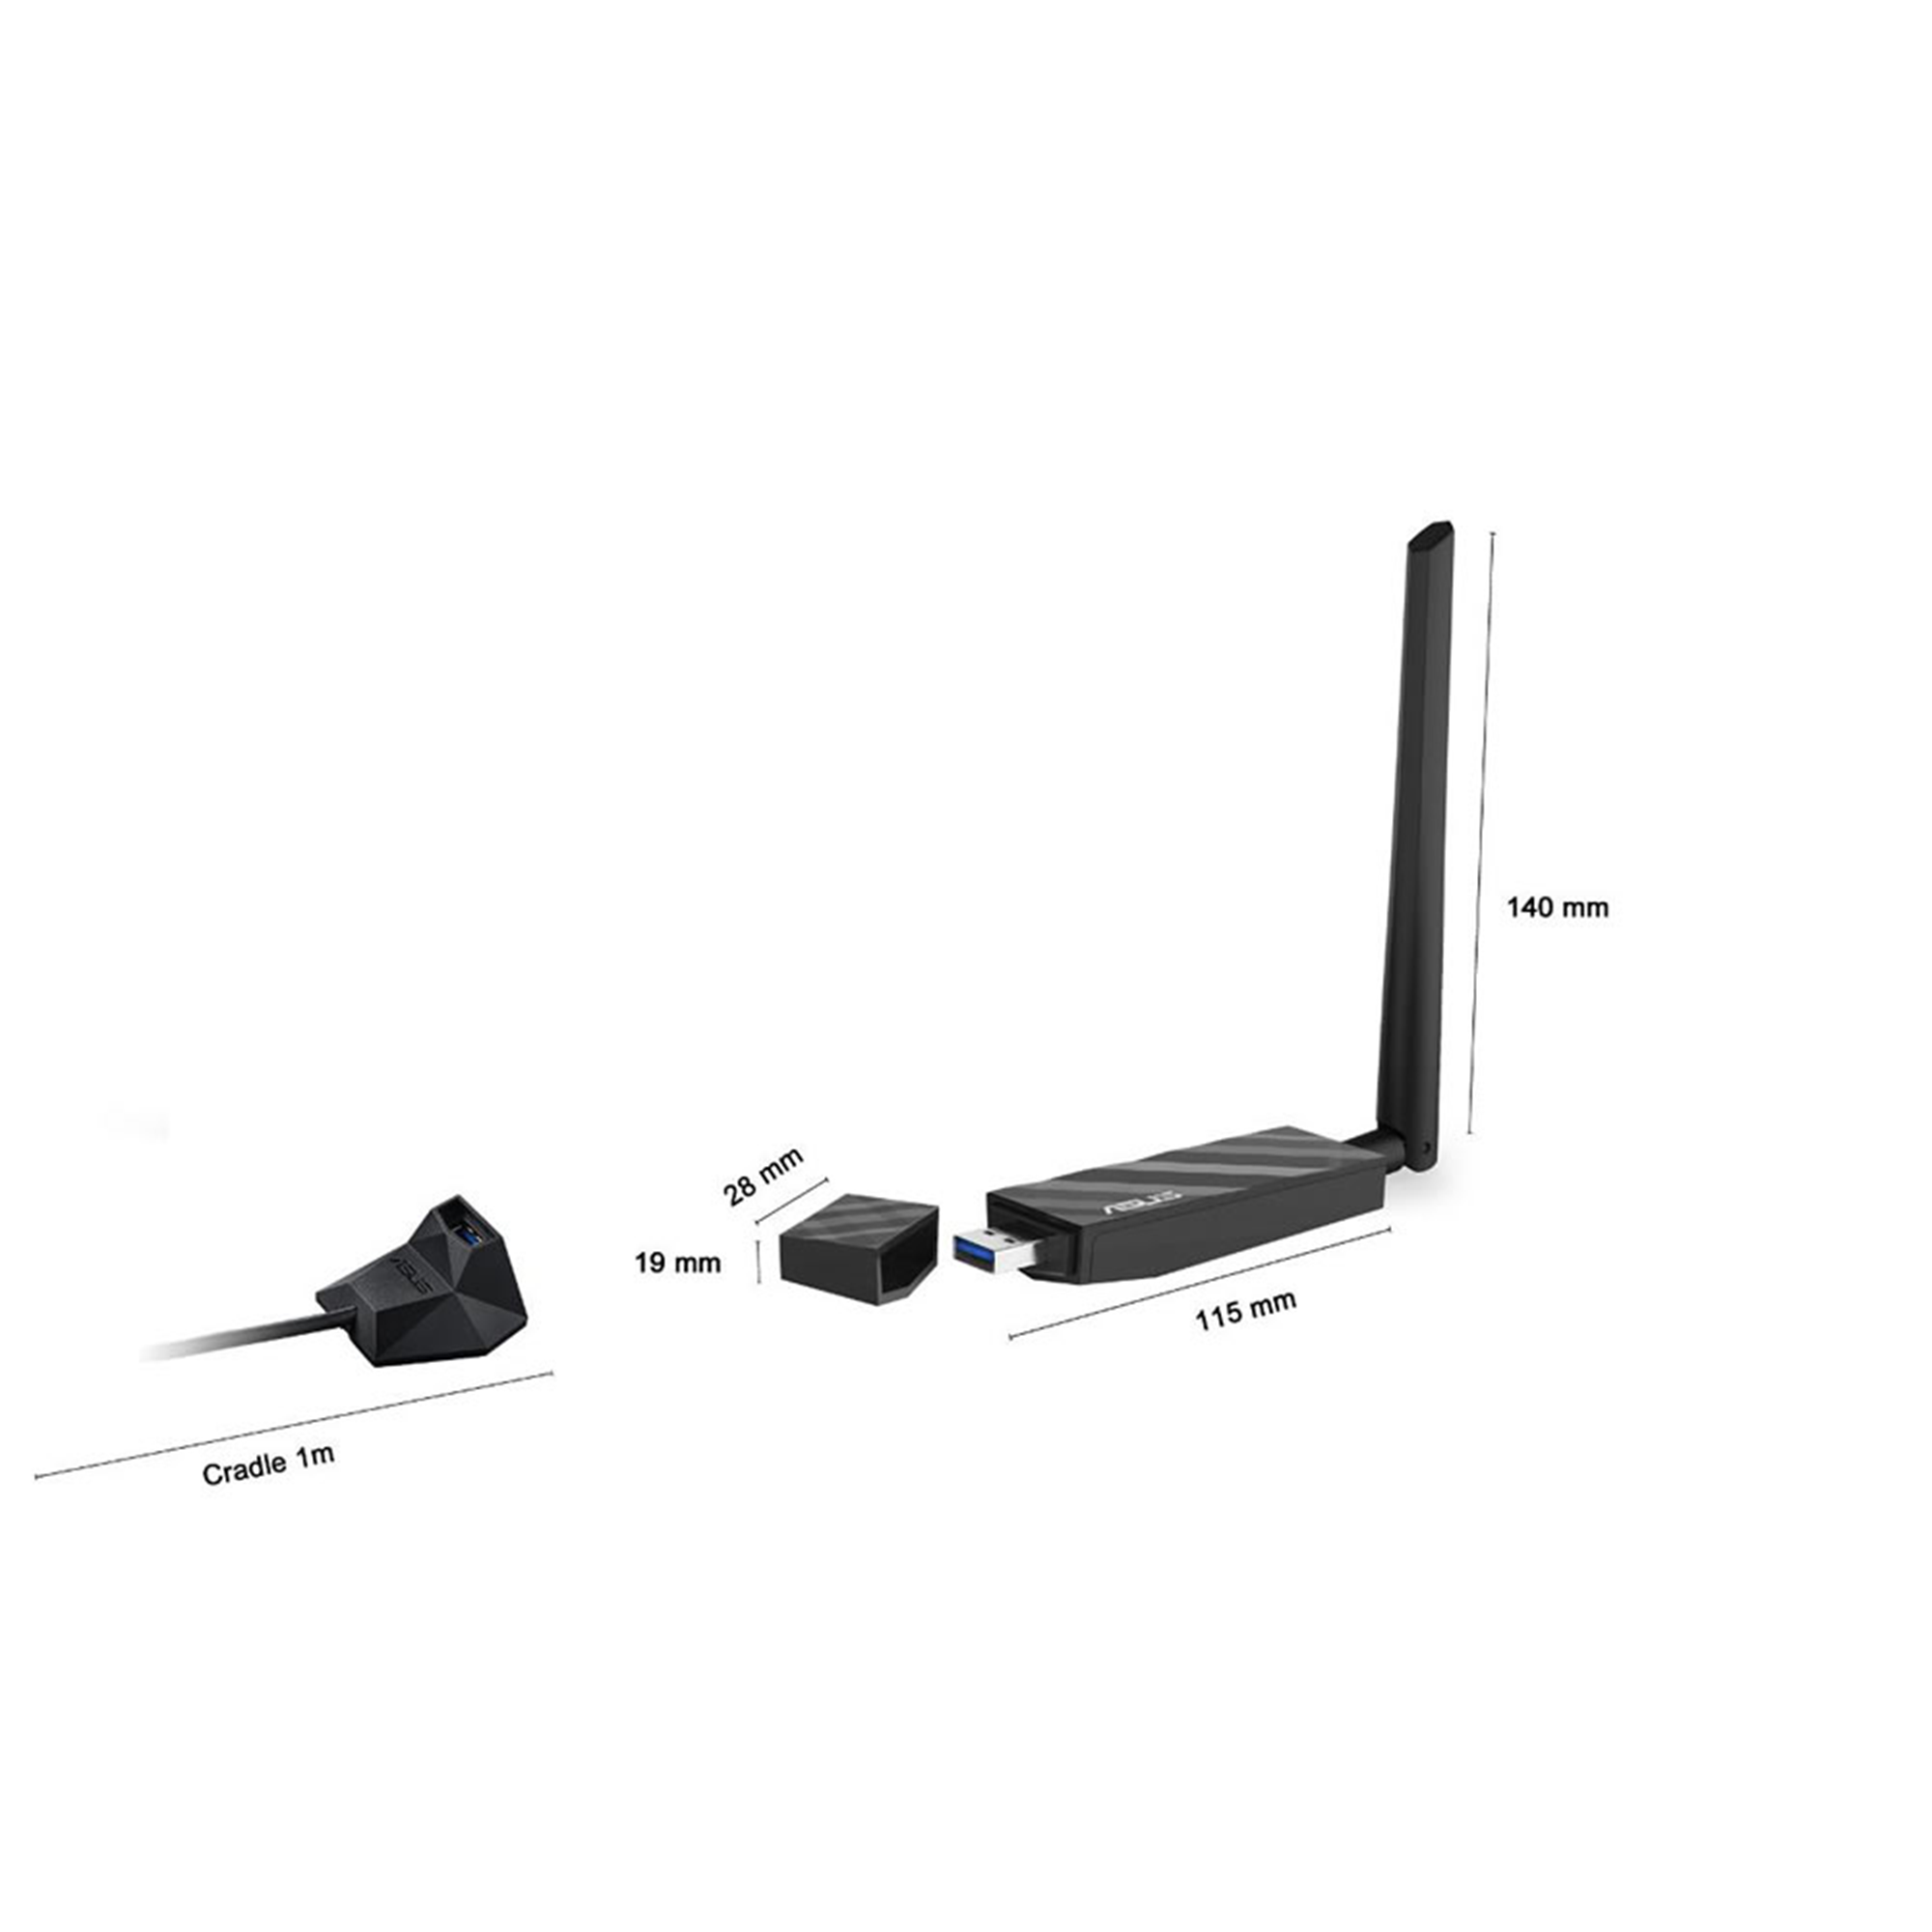 USB-AX56｜Adaptateurs Wi-Fi｜ASUS France